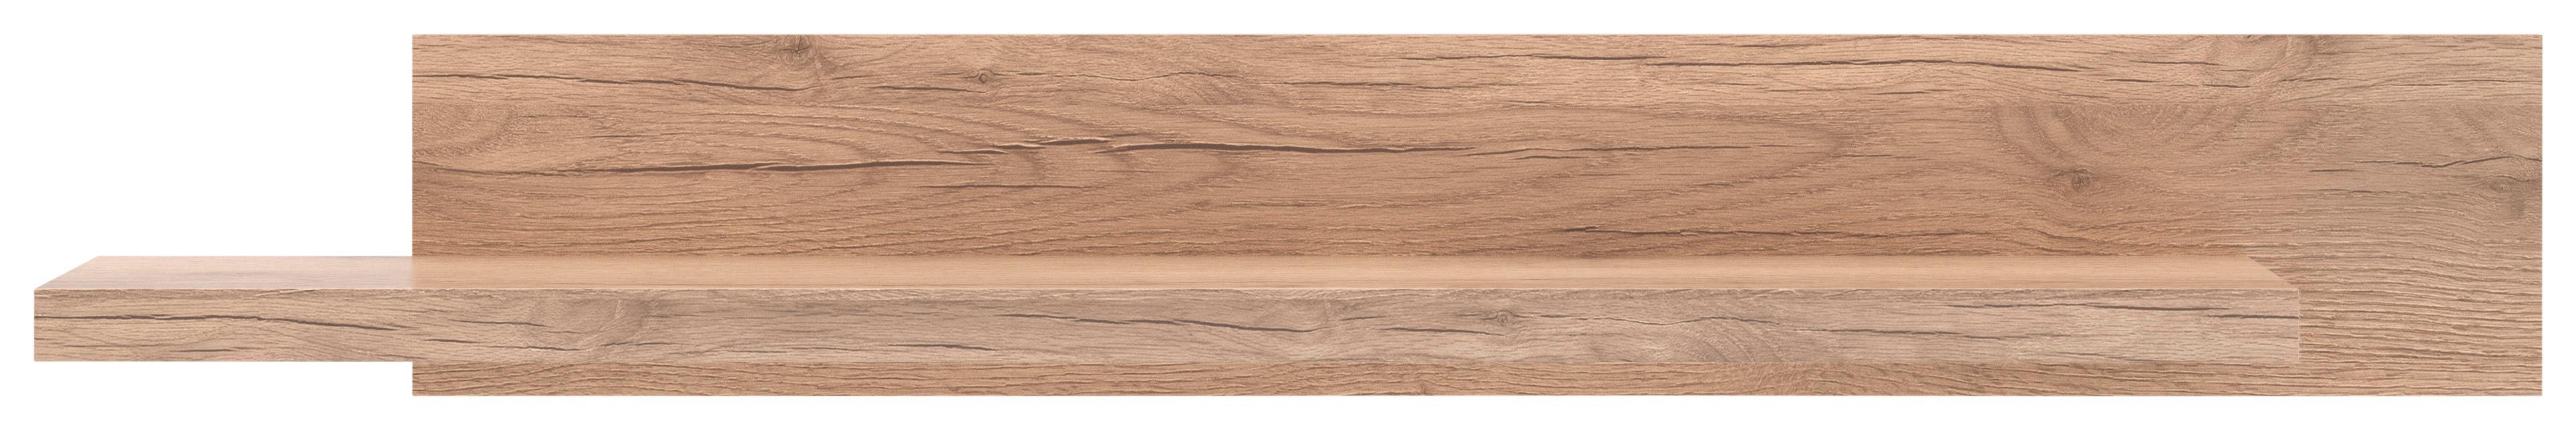 Polica Zidna Vancouver - boje hrasta, Modern, drvni materijal (156/22/26cm)